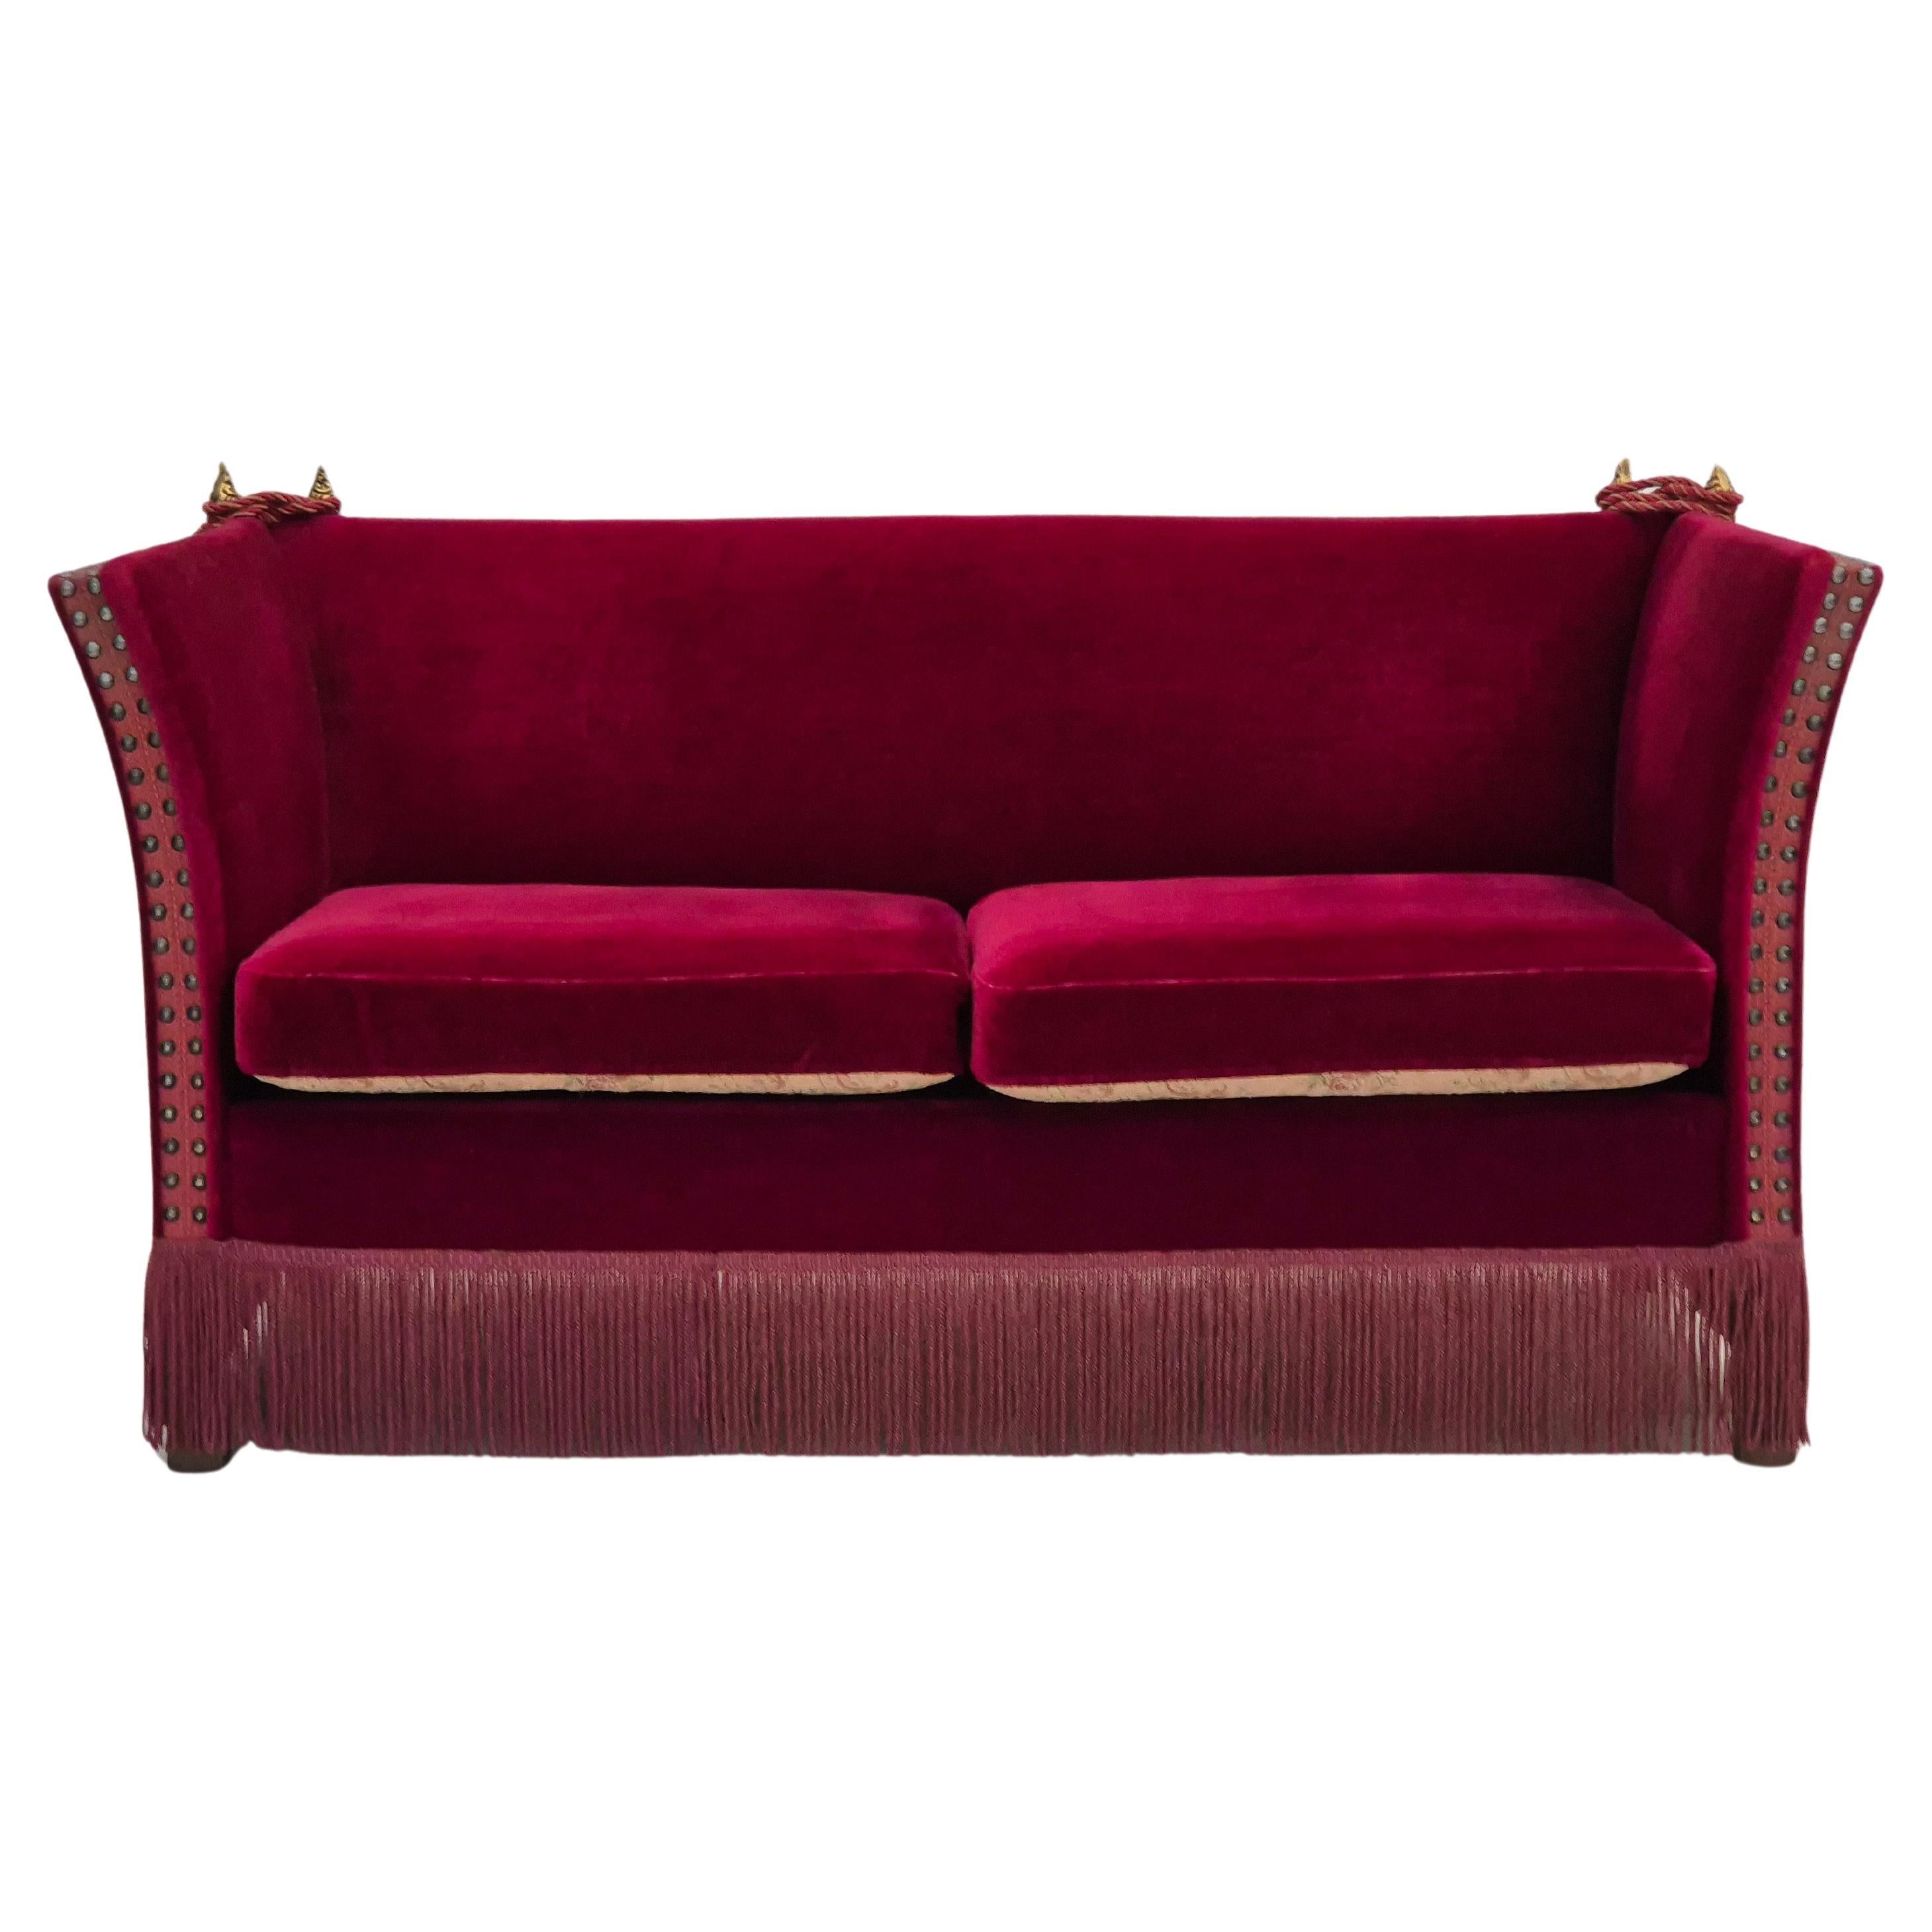 1960er Jahre, dänisches "spanisches" Sofa, Originalzustand, Möbelvelours, Eschenholz.